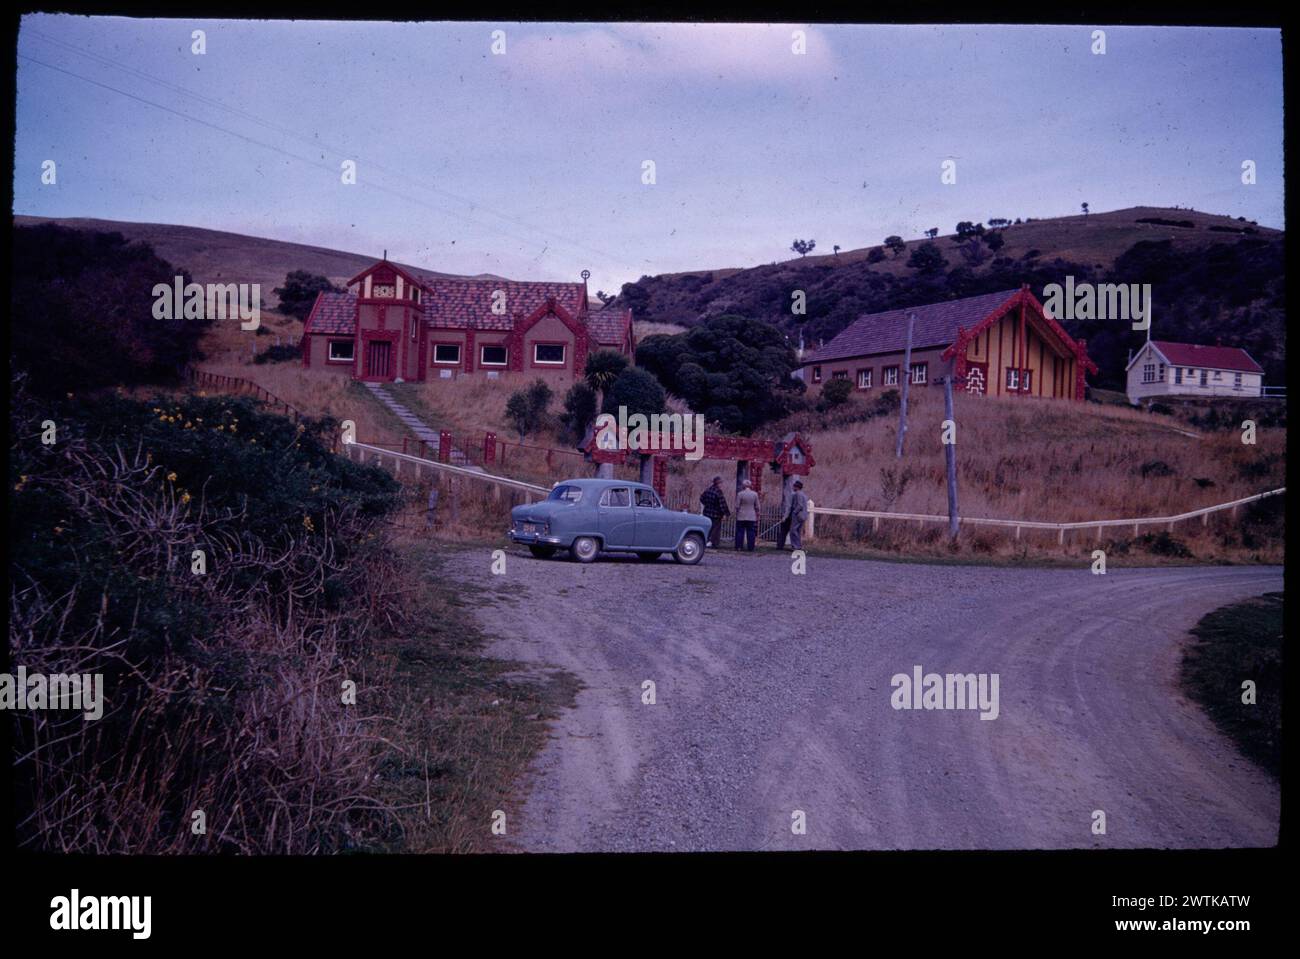 Otakou, l'église maorie ornée, la maison de réunion Tamatea et l'école natale de Ngai-Tahu de la péninsule d'Otago transparents en couleurs, diapositives en couleurs Banque D'Images